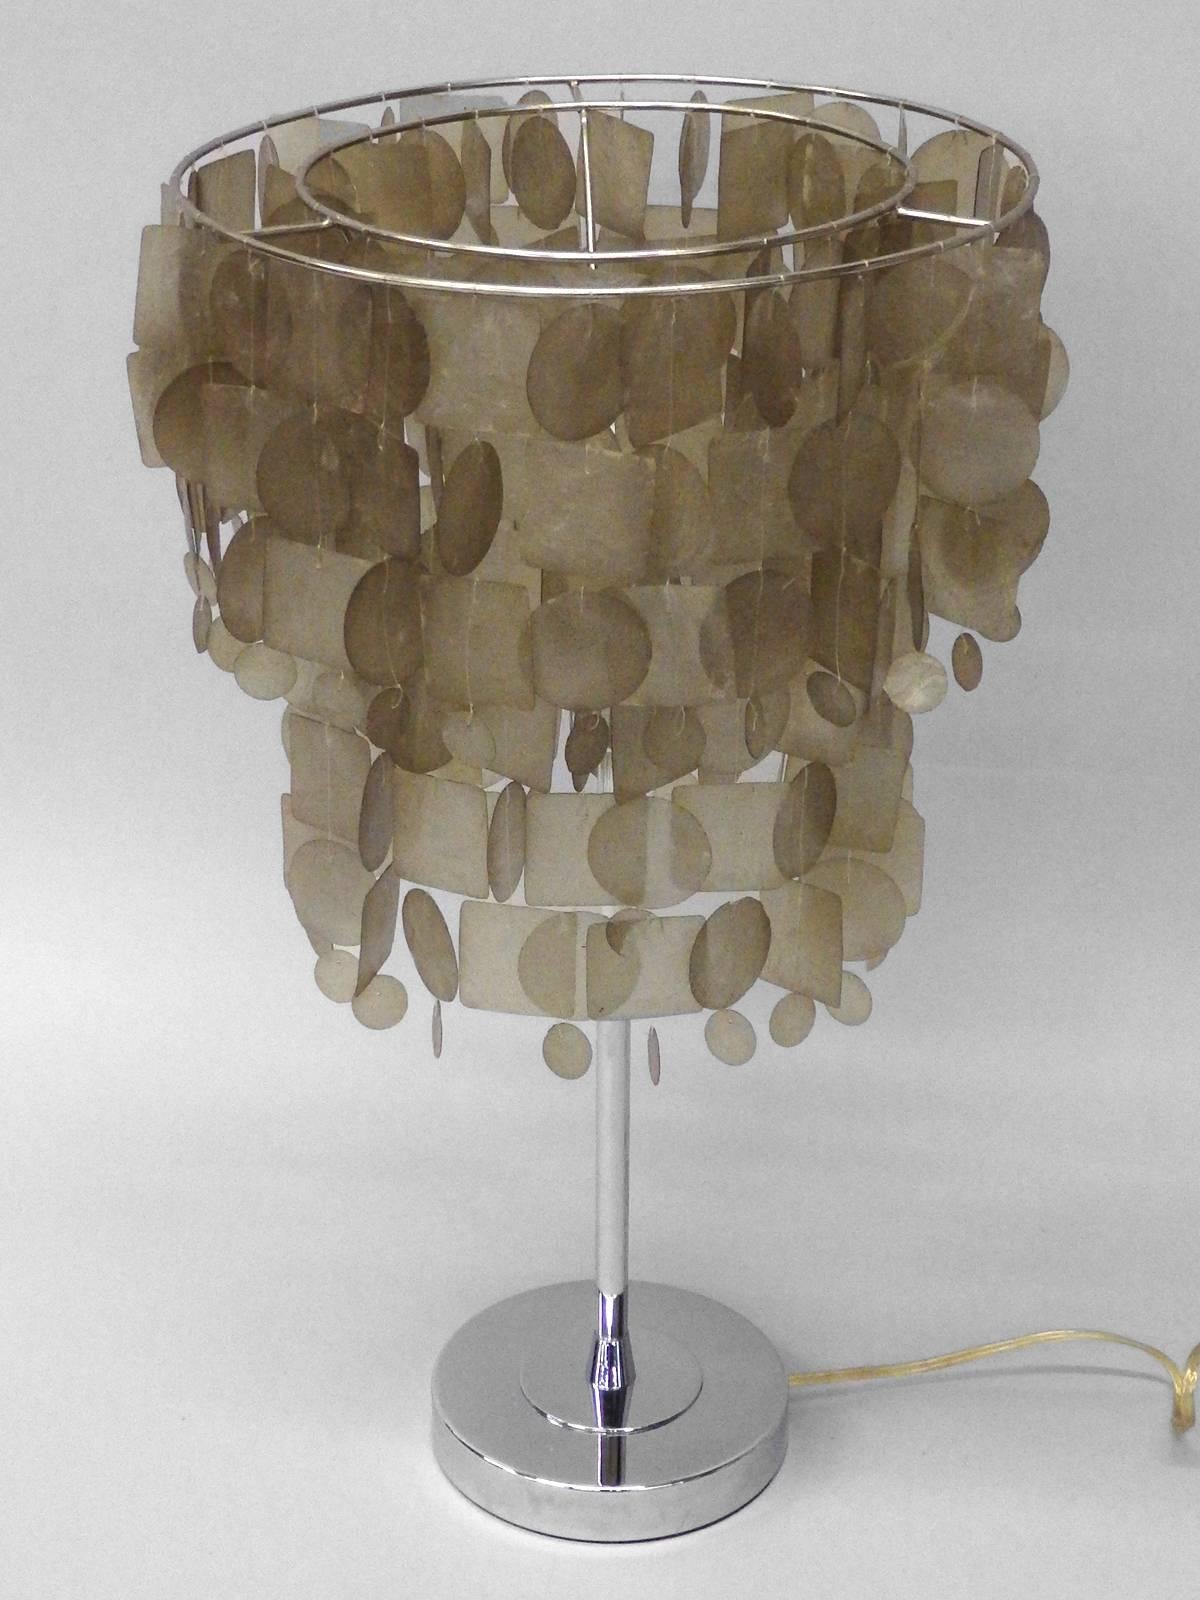 Lampe de table en forme de coquille de capice de style Verner Panton, attribuée à Verner Panton.